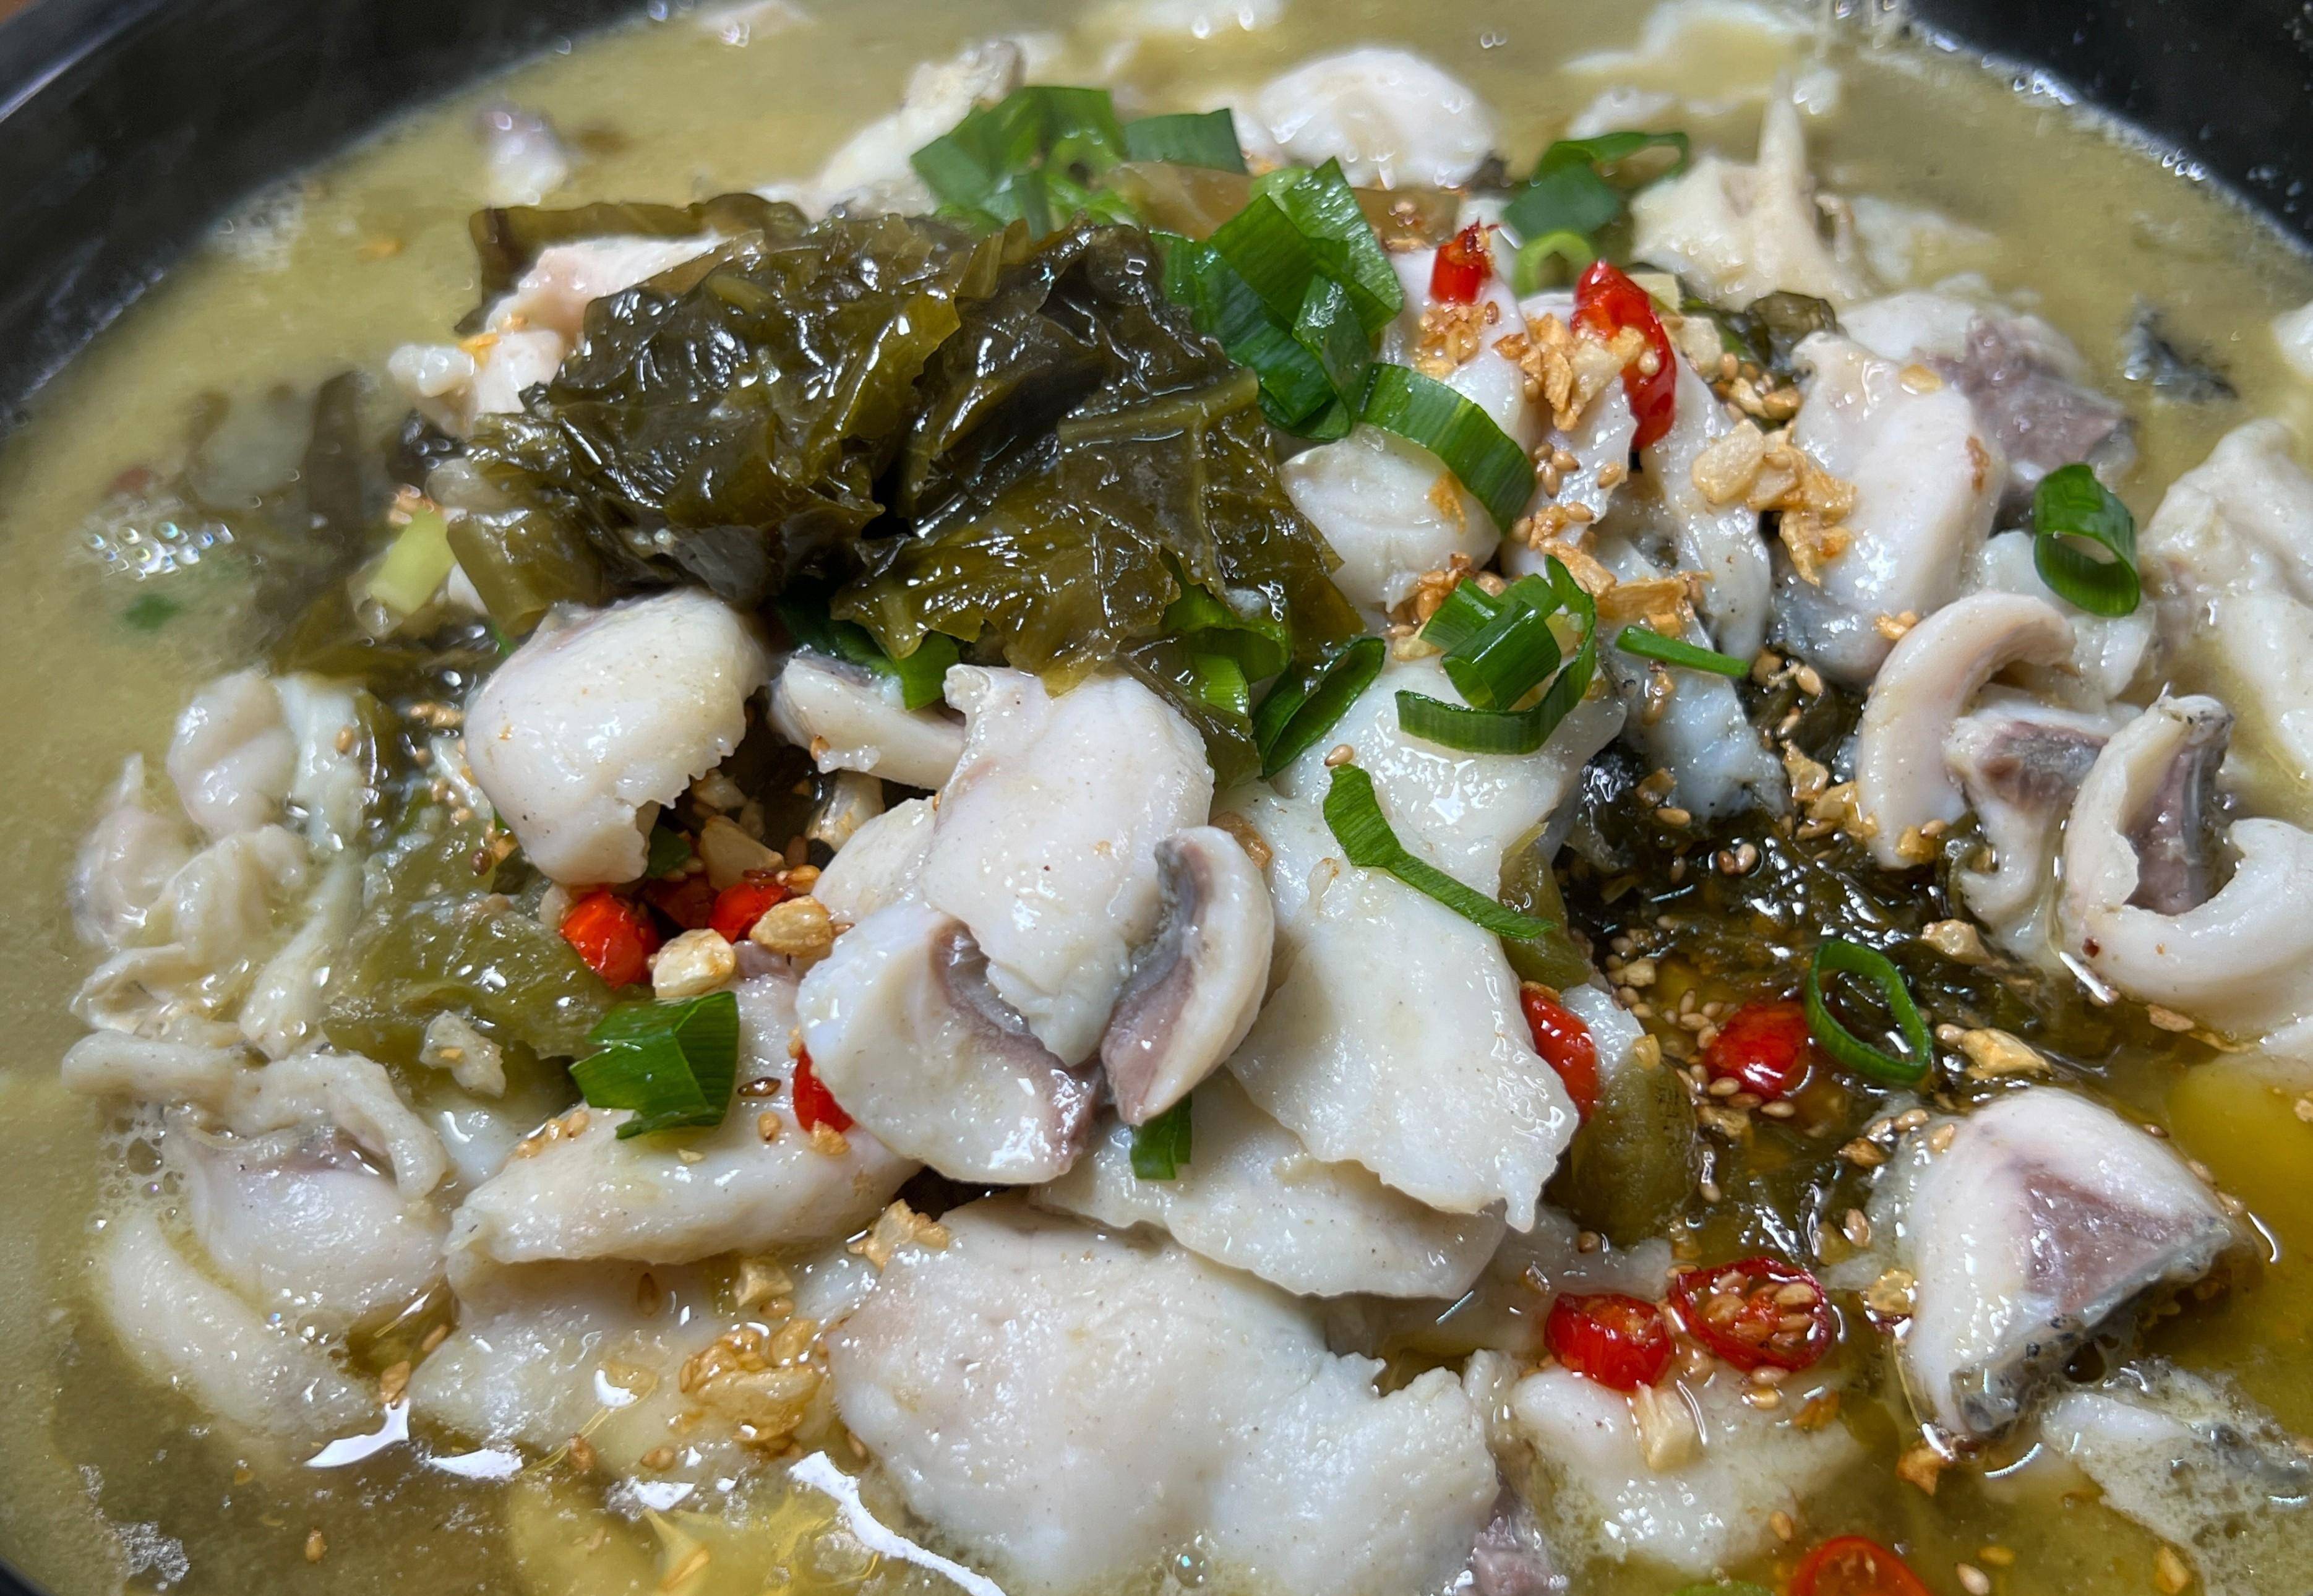 一条3斤草鱼,一袋酸菜,做能喝汤的酸菜鱼,鱼肉嫩滑,酸菜下饭